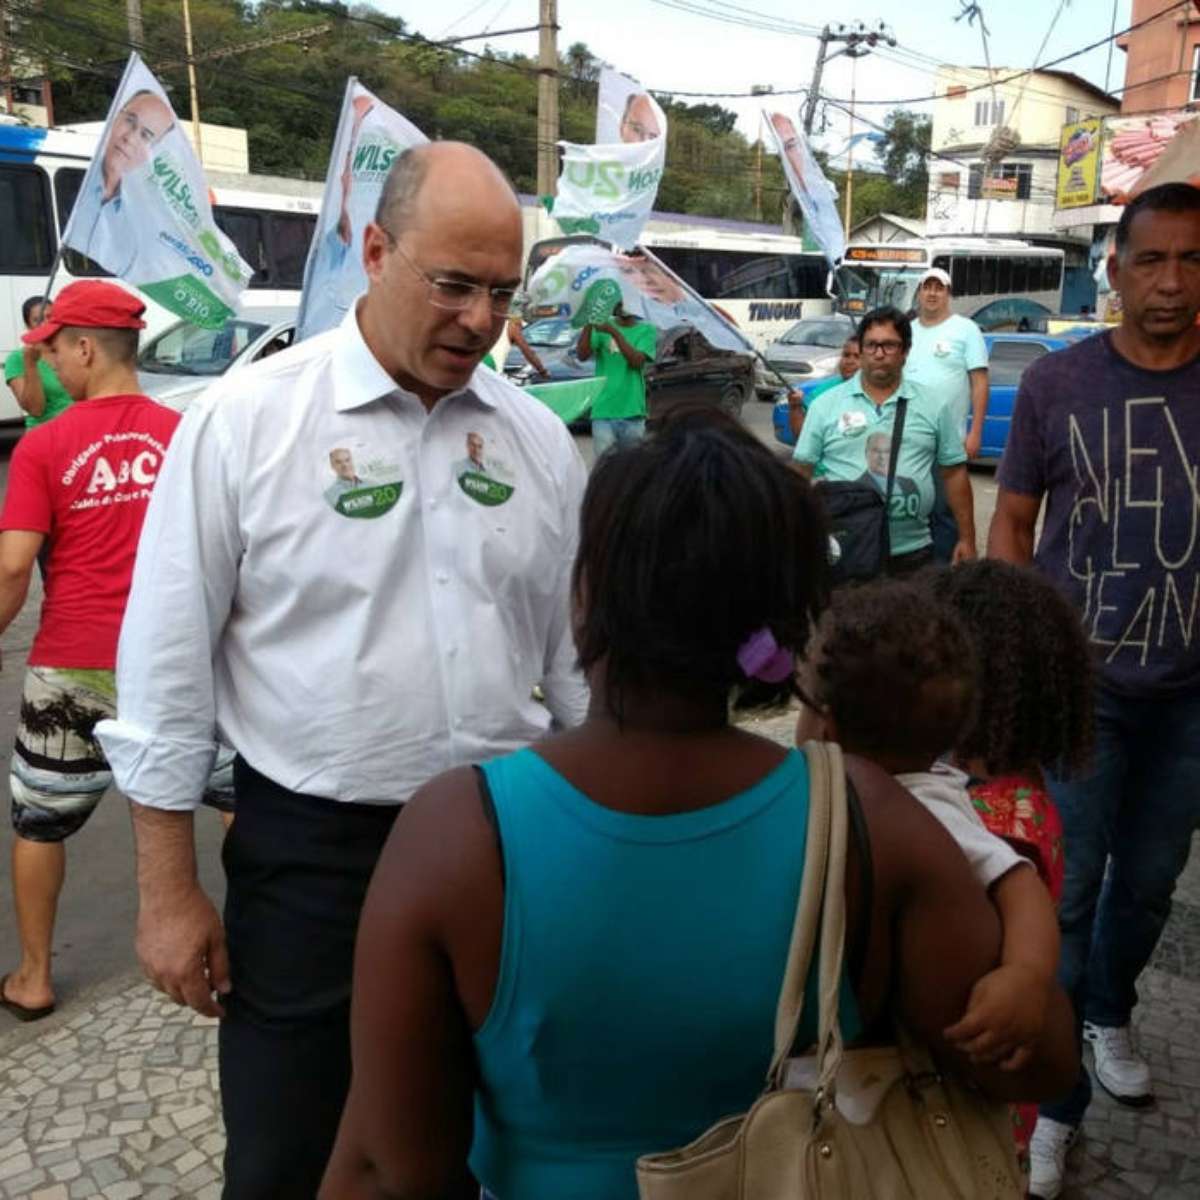 O peso do voto evangélico em São Paulo e no Rio